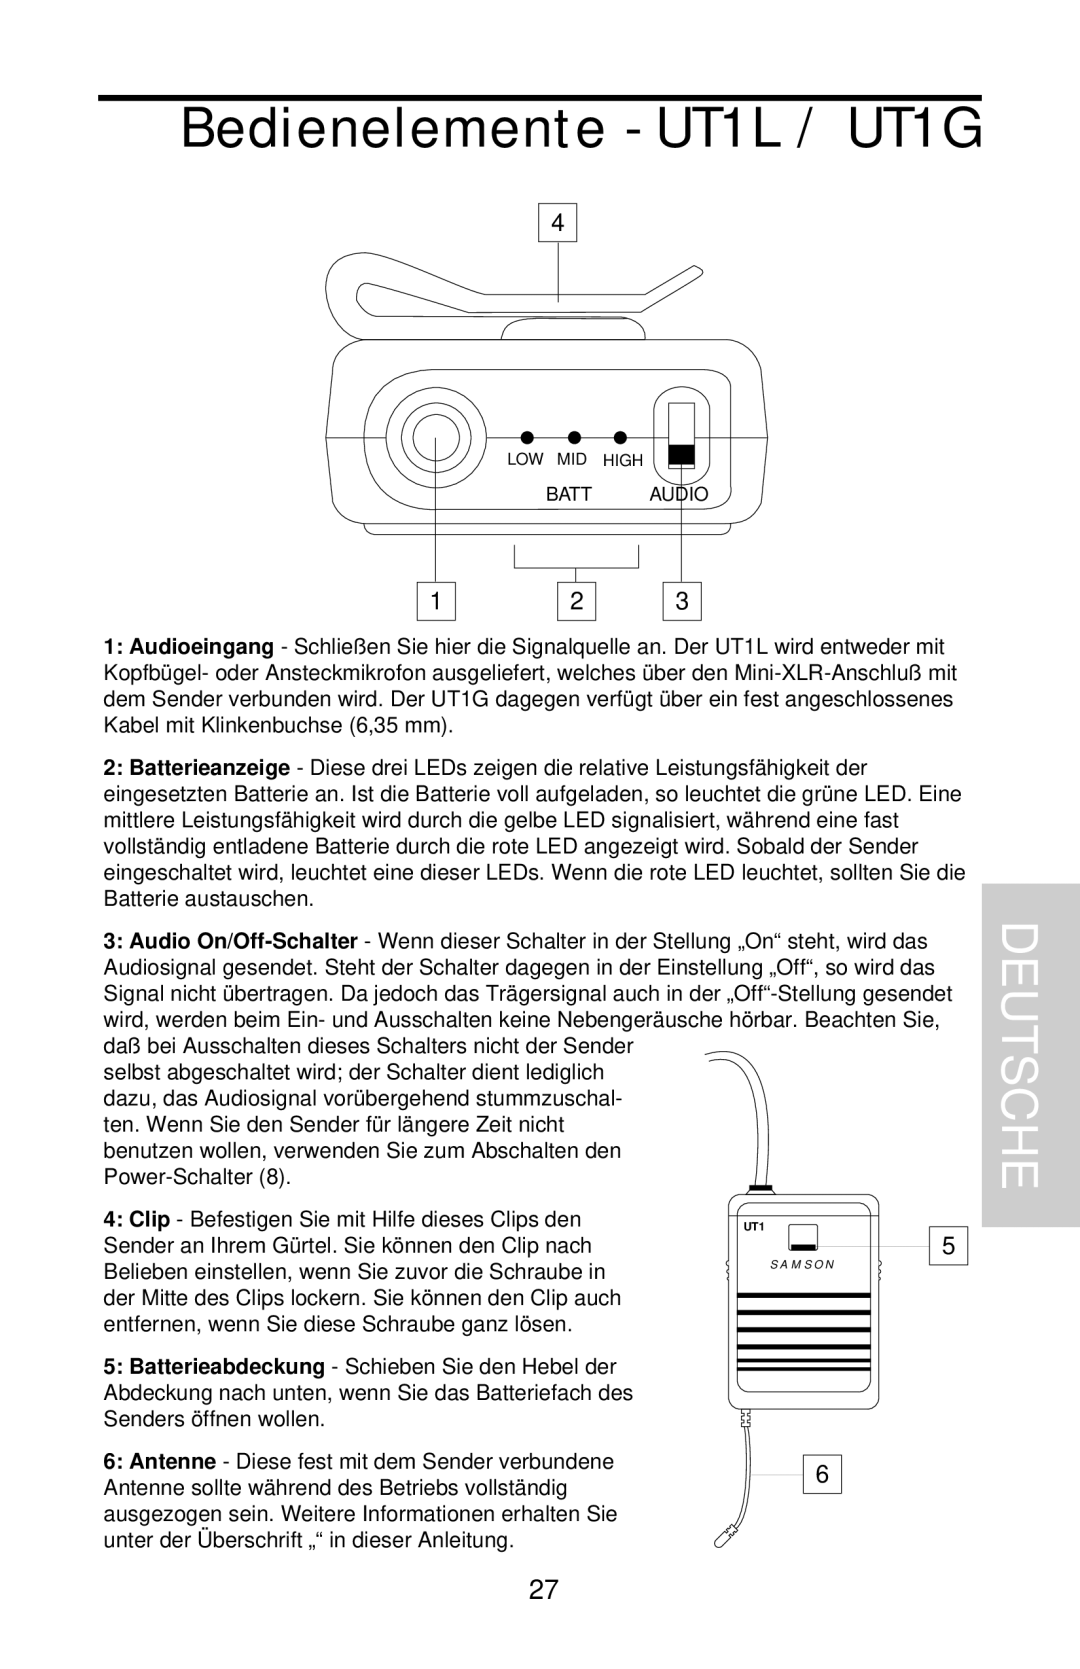 Samson UHF 801 owner manual Bedienelemente - UT1L / UT1G, Deutsche 